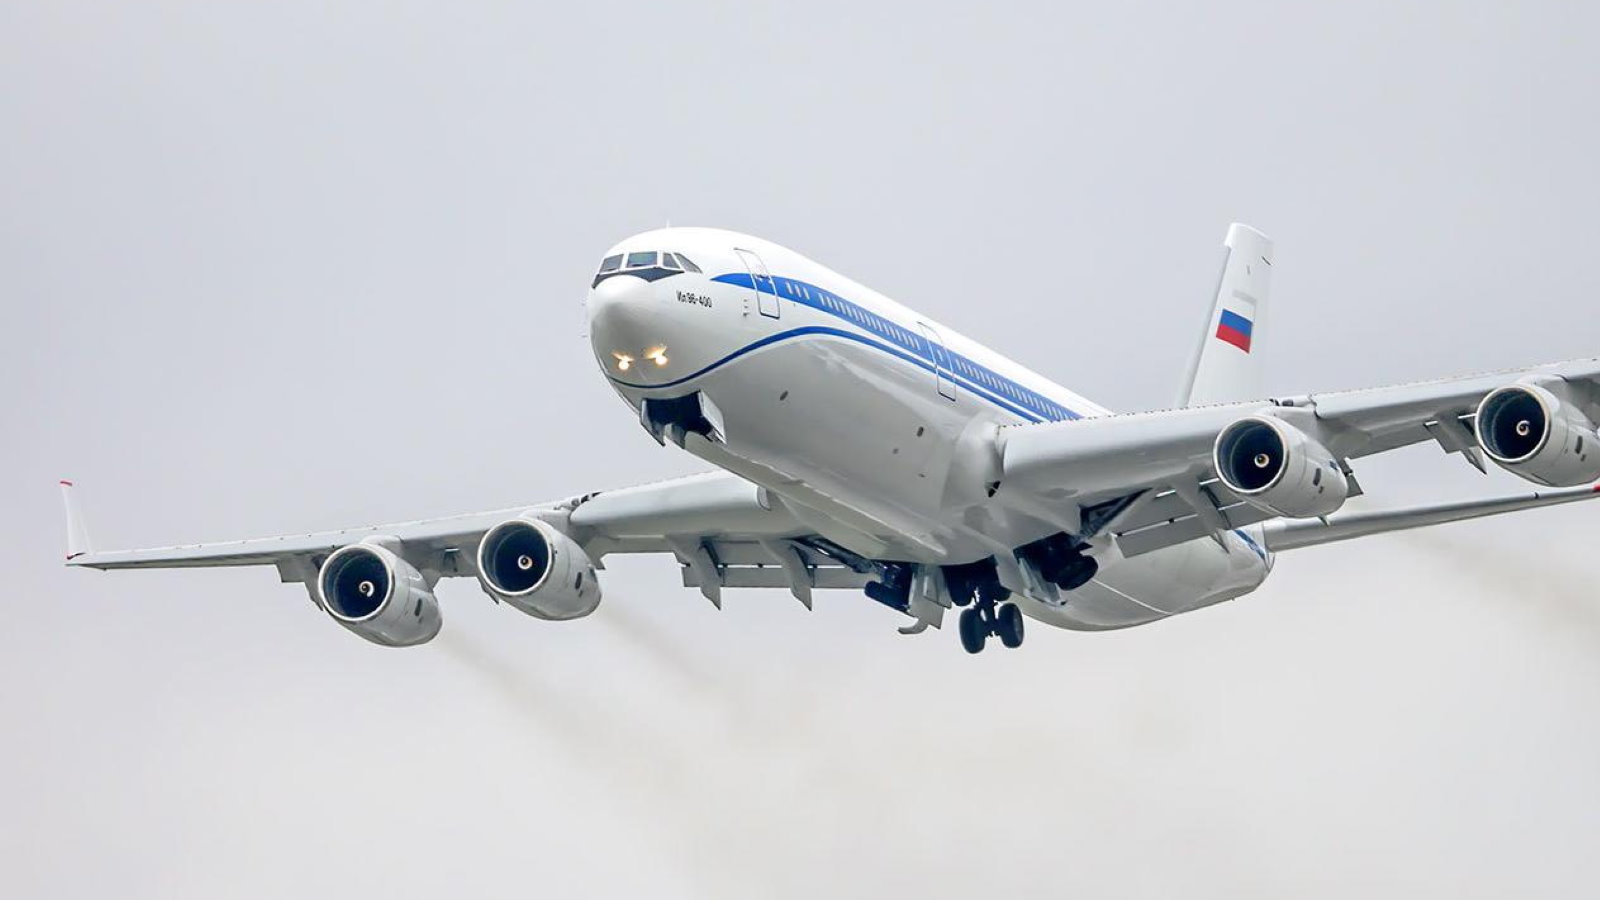 Опытный образец российского авиалайнера Ил-96-400М планируют построить в 2021 году